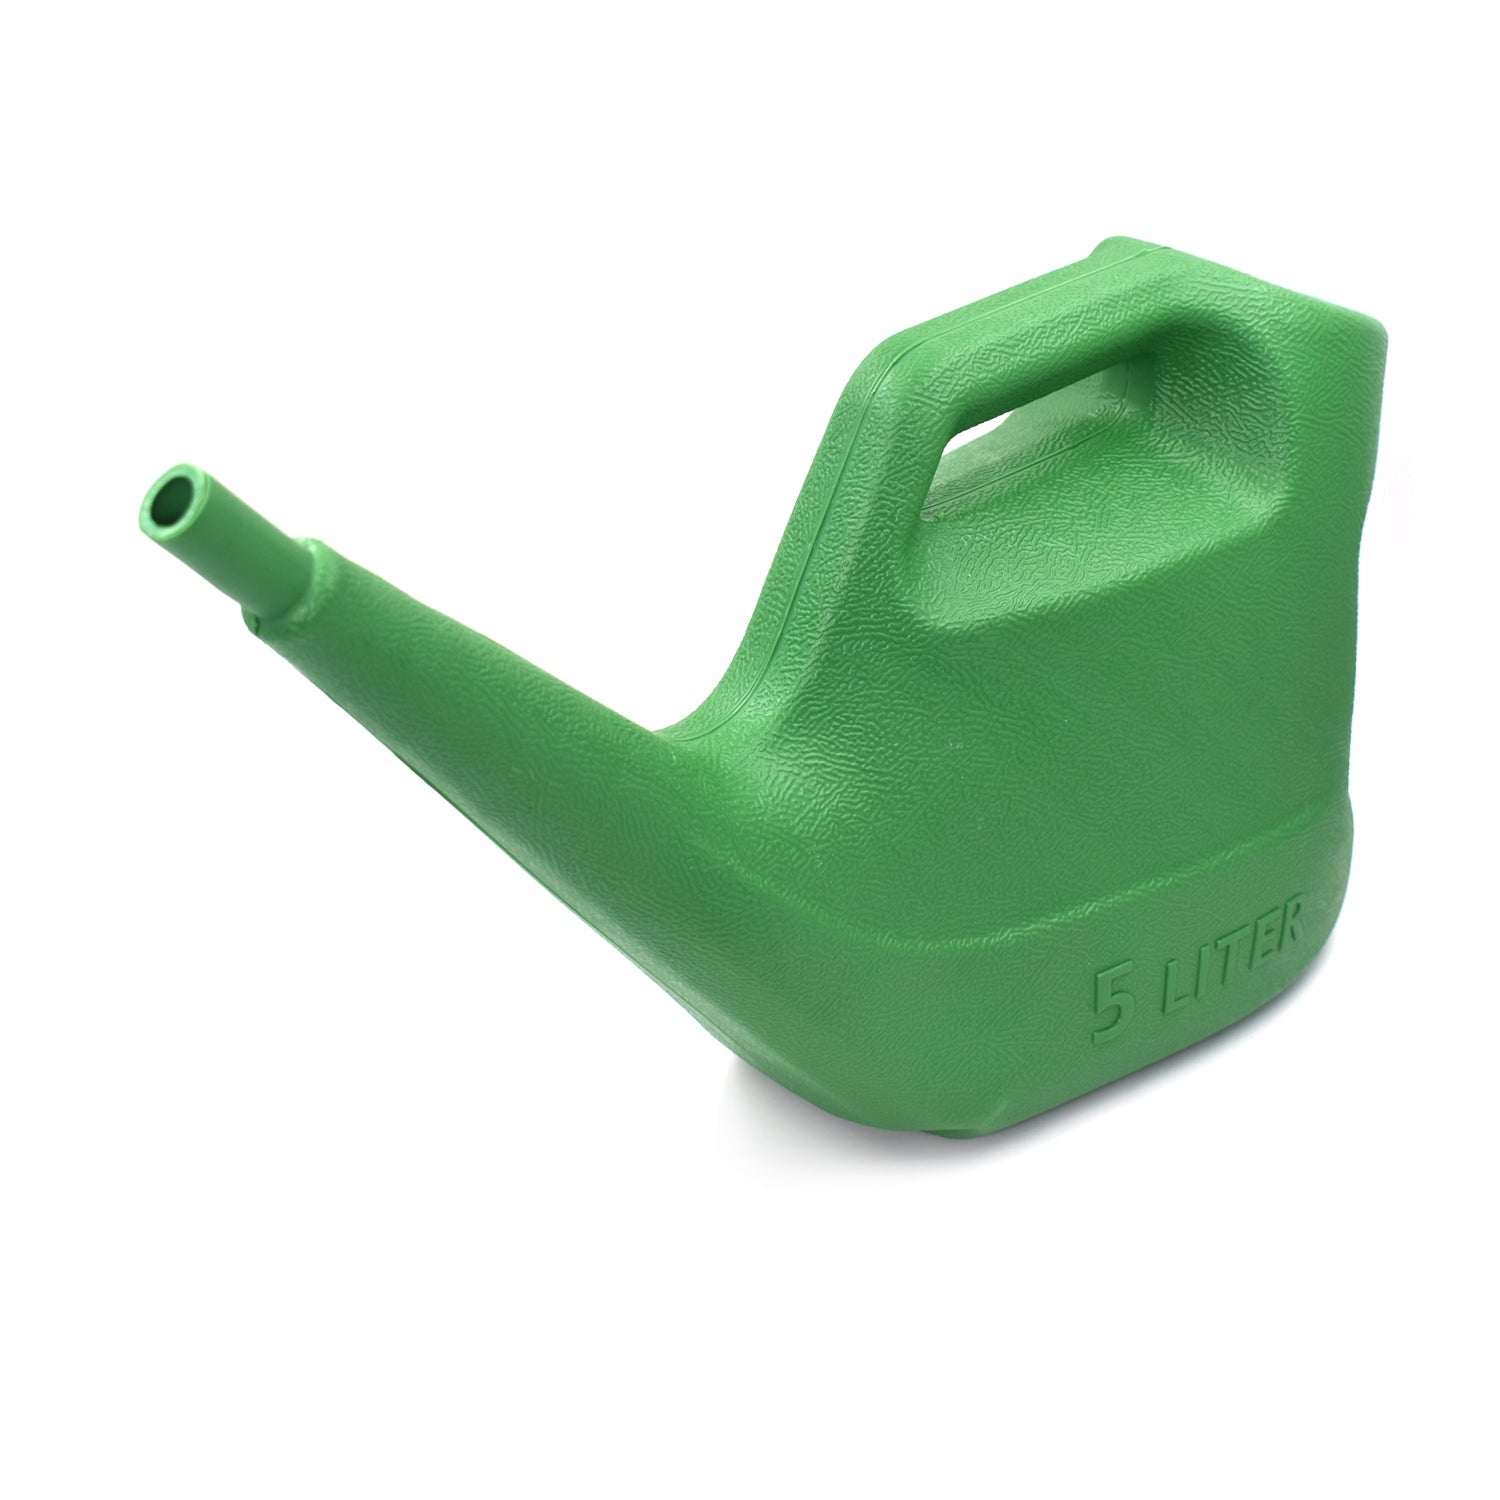 9021 Plastic Watering Can Water Sprayer Sprinkler for Plants Indoor Outdoor Gardening, 5 LTR DeoDap